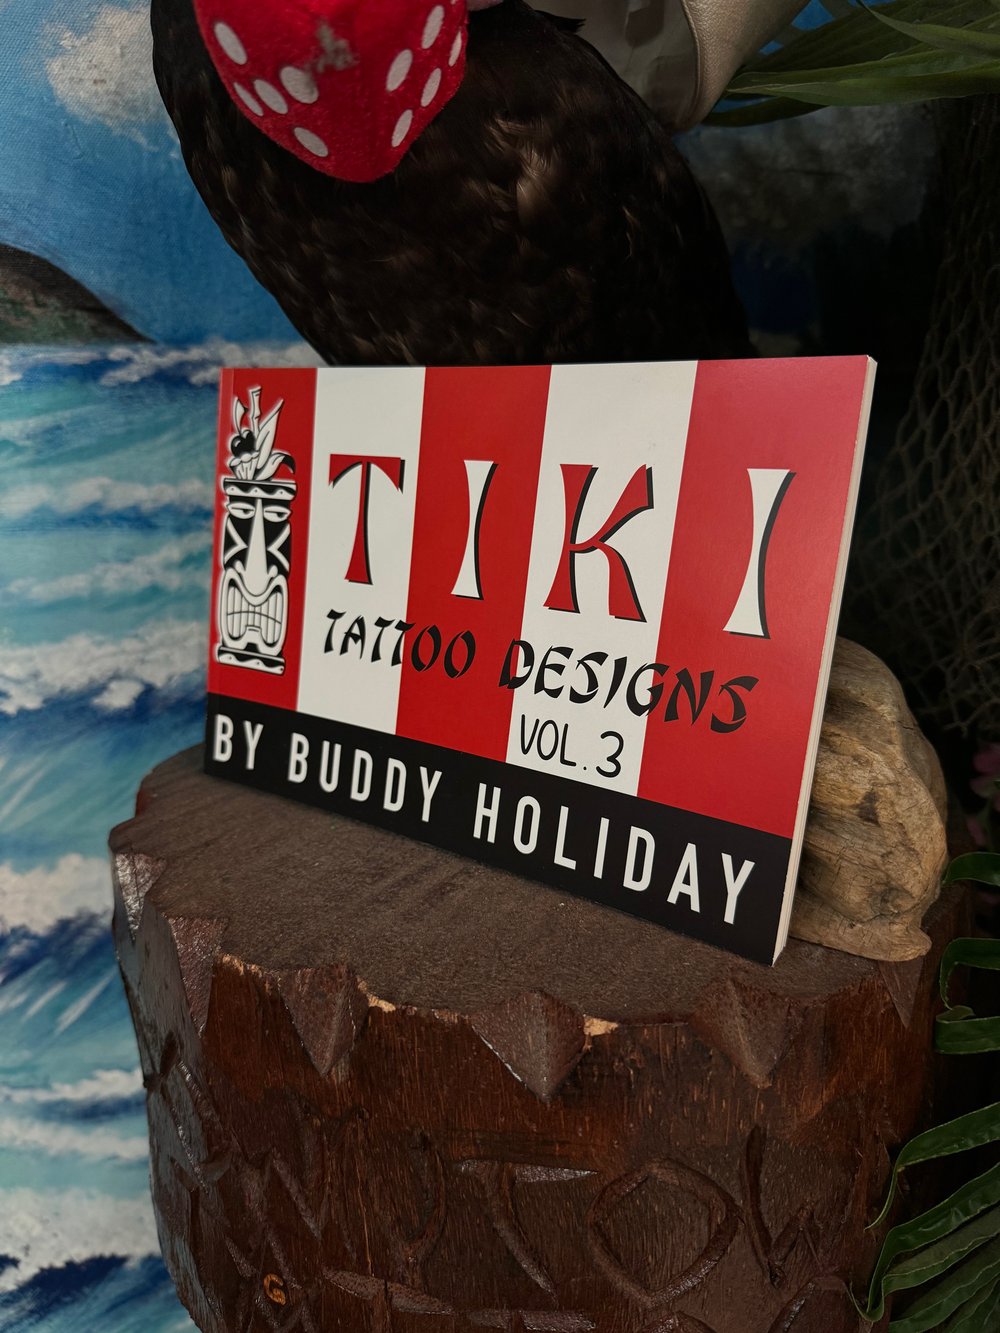 Tiki Tattoo Designs Vol. 3